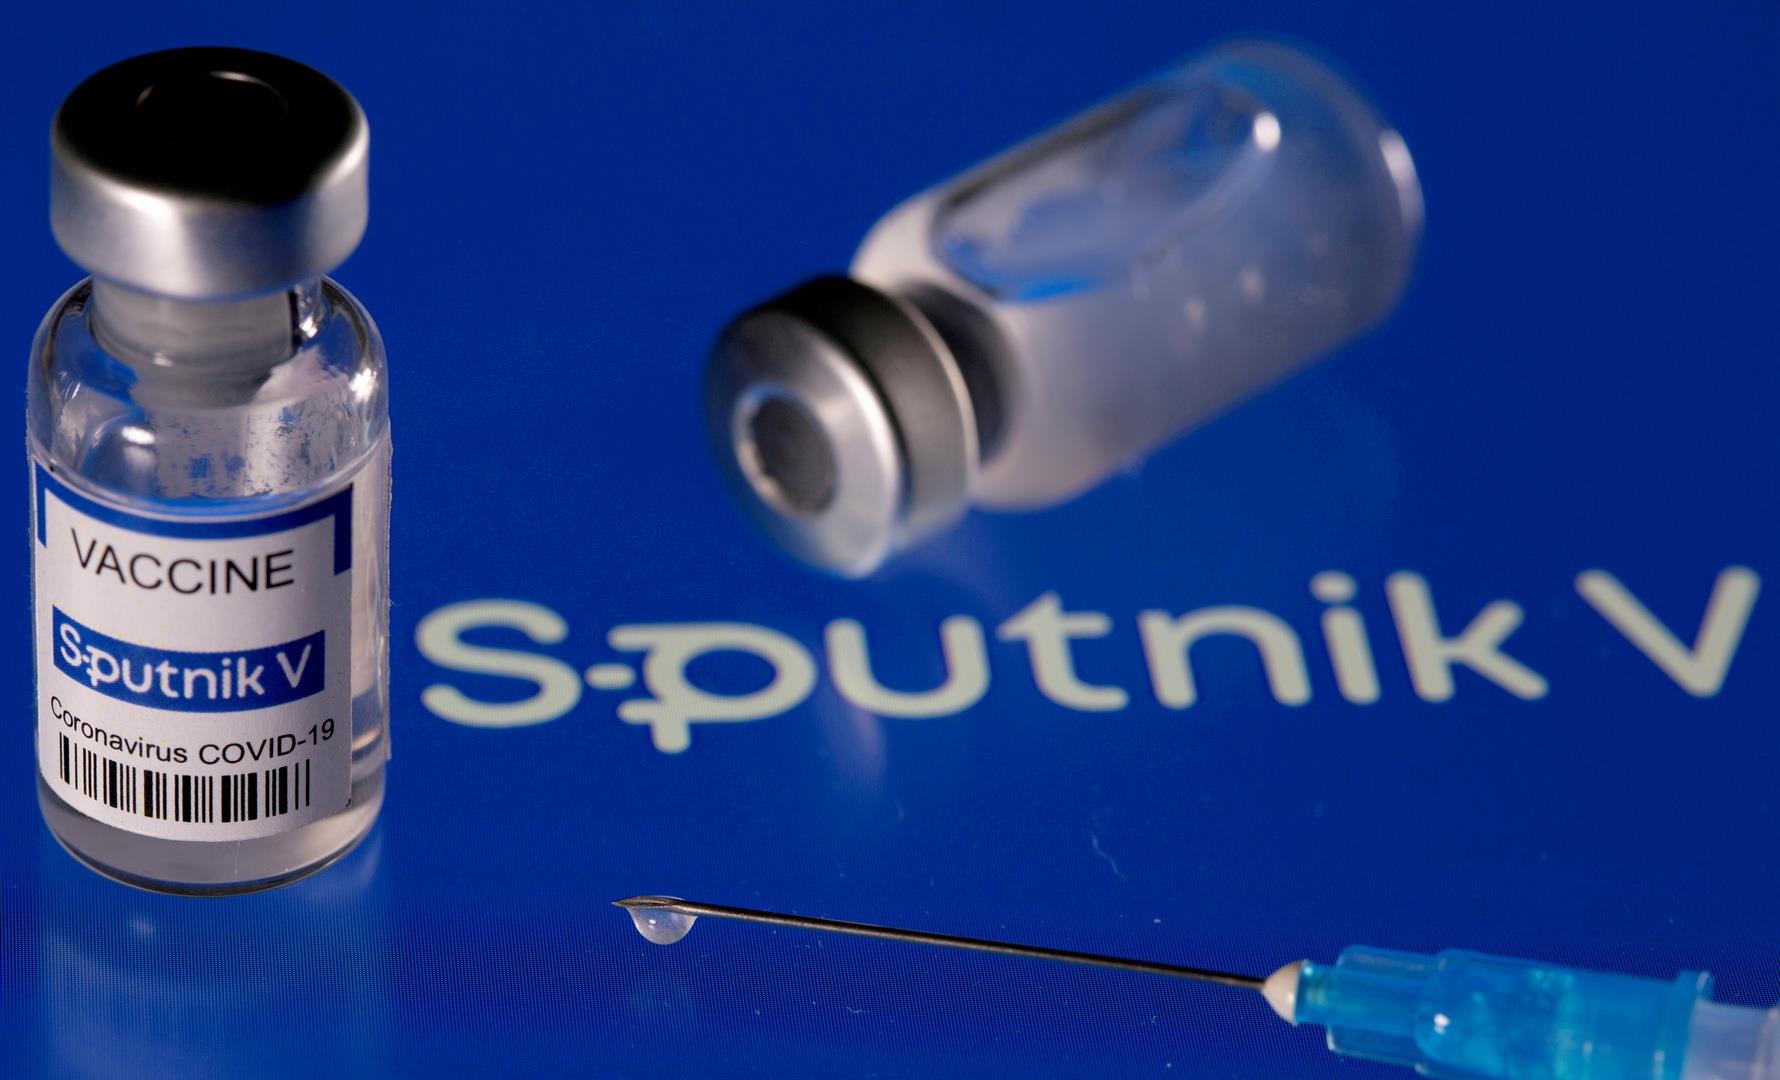 موسكو تعلن اتفاقا لإنتاج 300 مليون جرعة من لقاح سبوتنيك-في في السنة في الهند